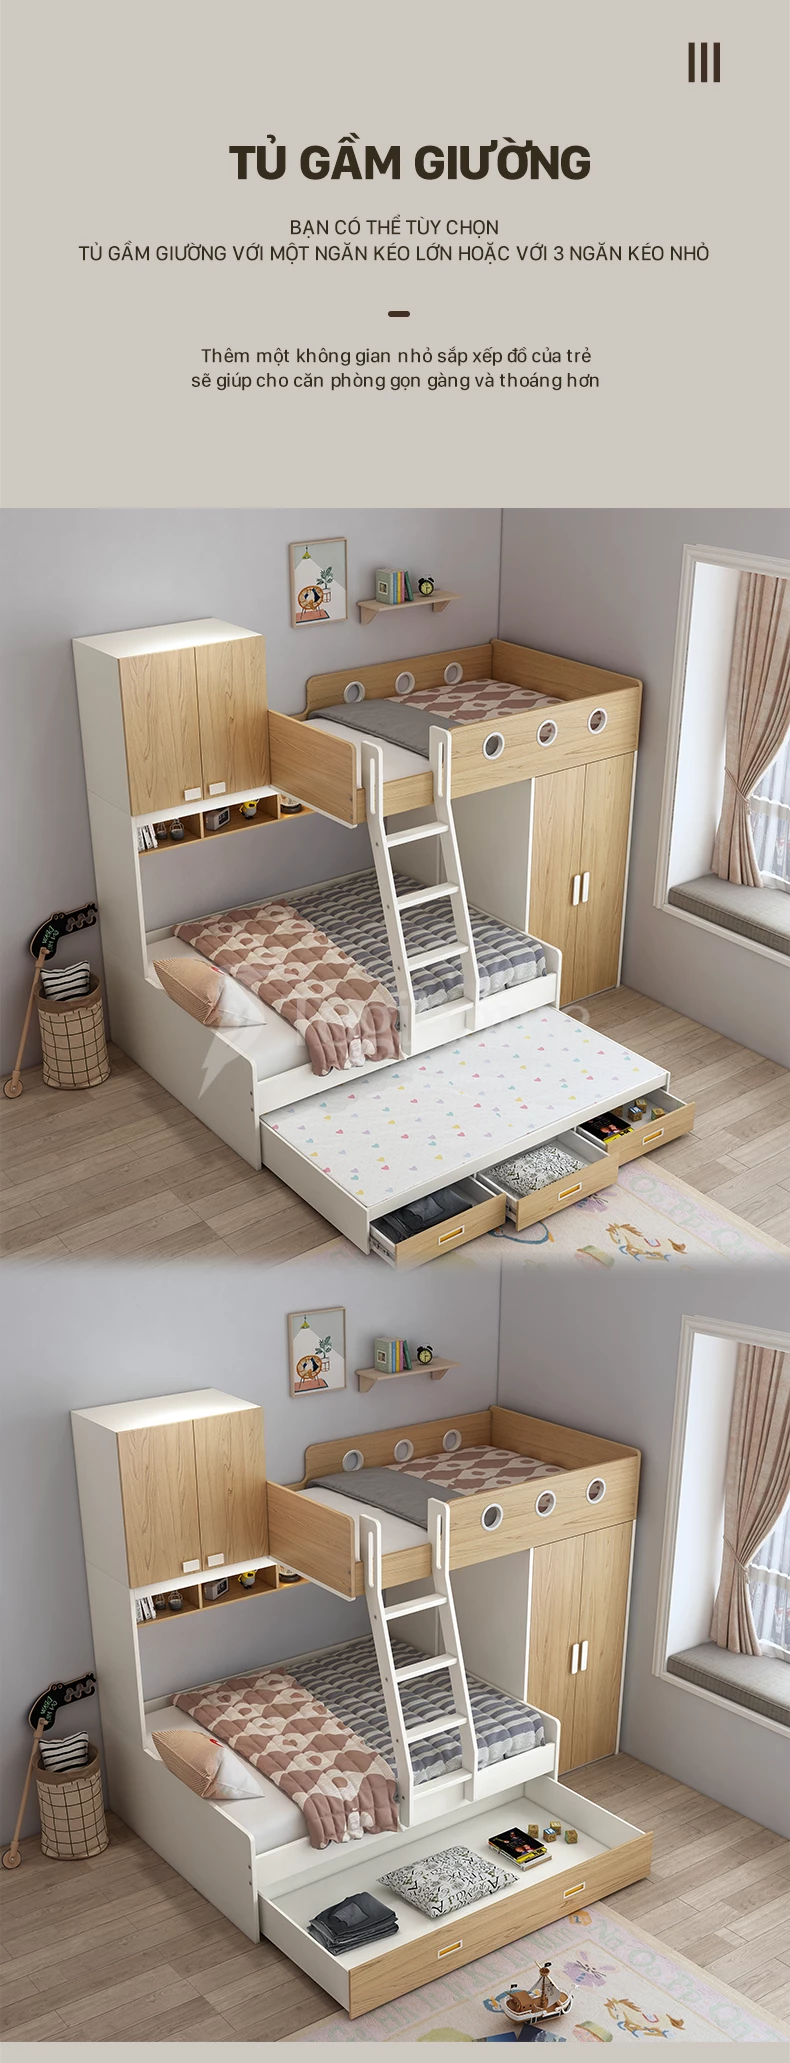 Thiết kế giường dạng hộp đa năng của bộ giường trẻ em GTE05